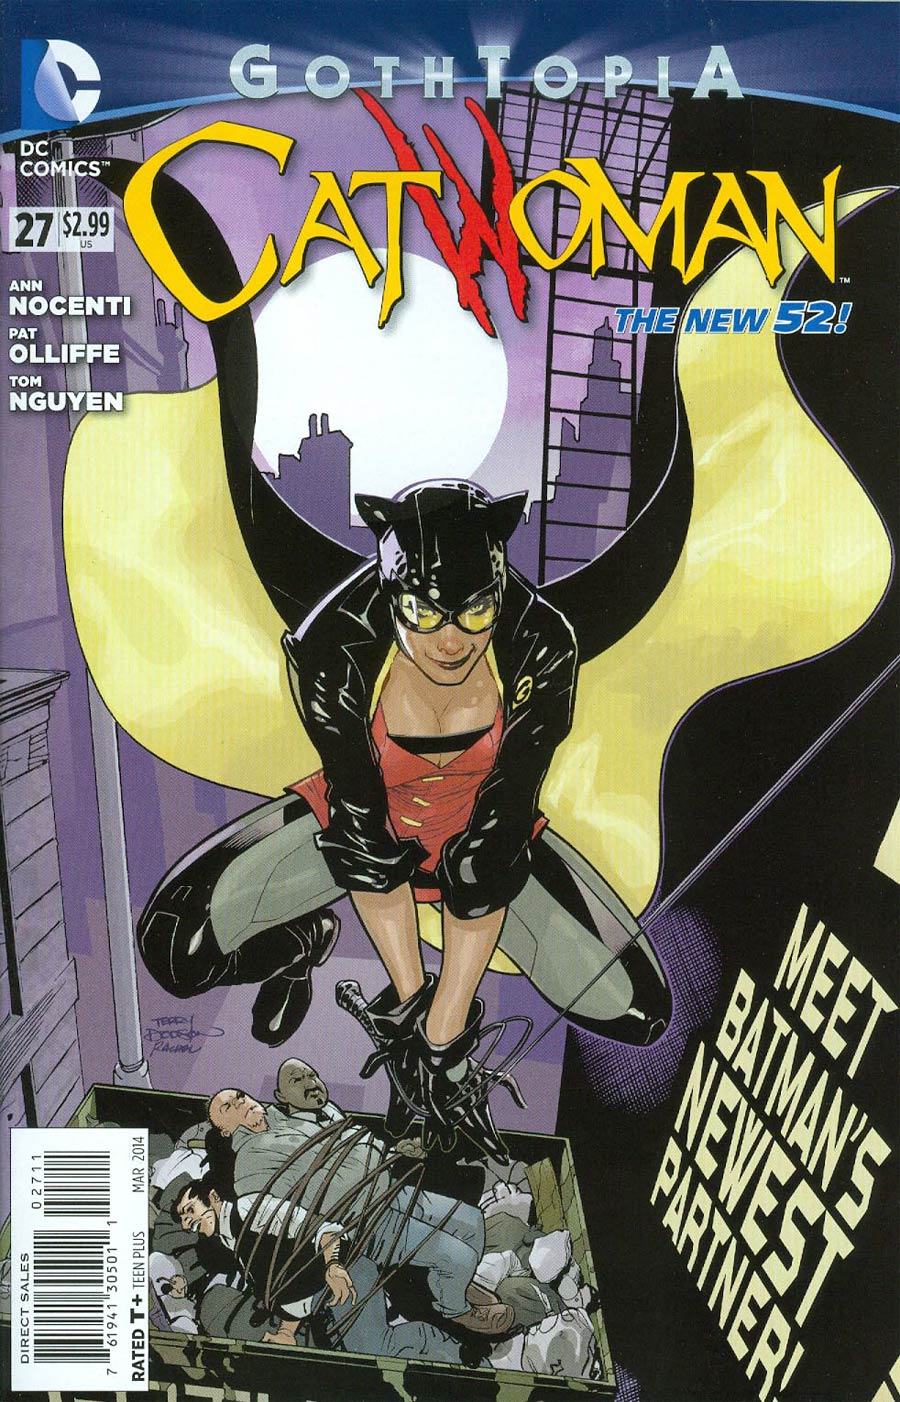 Catwoman Vol 4 #27 (Gothtopia Tie-In)